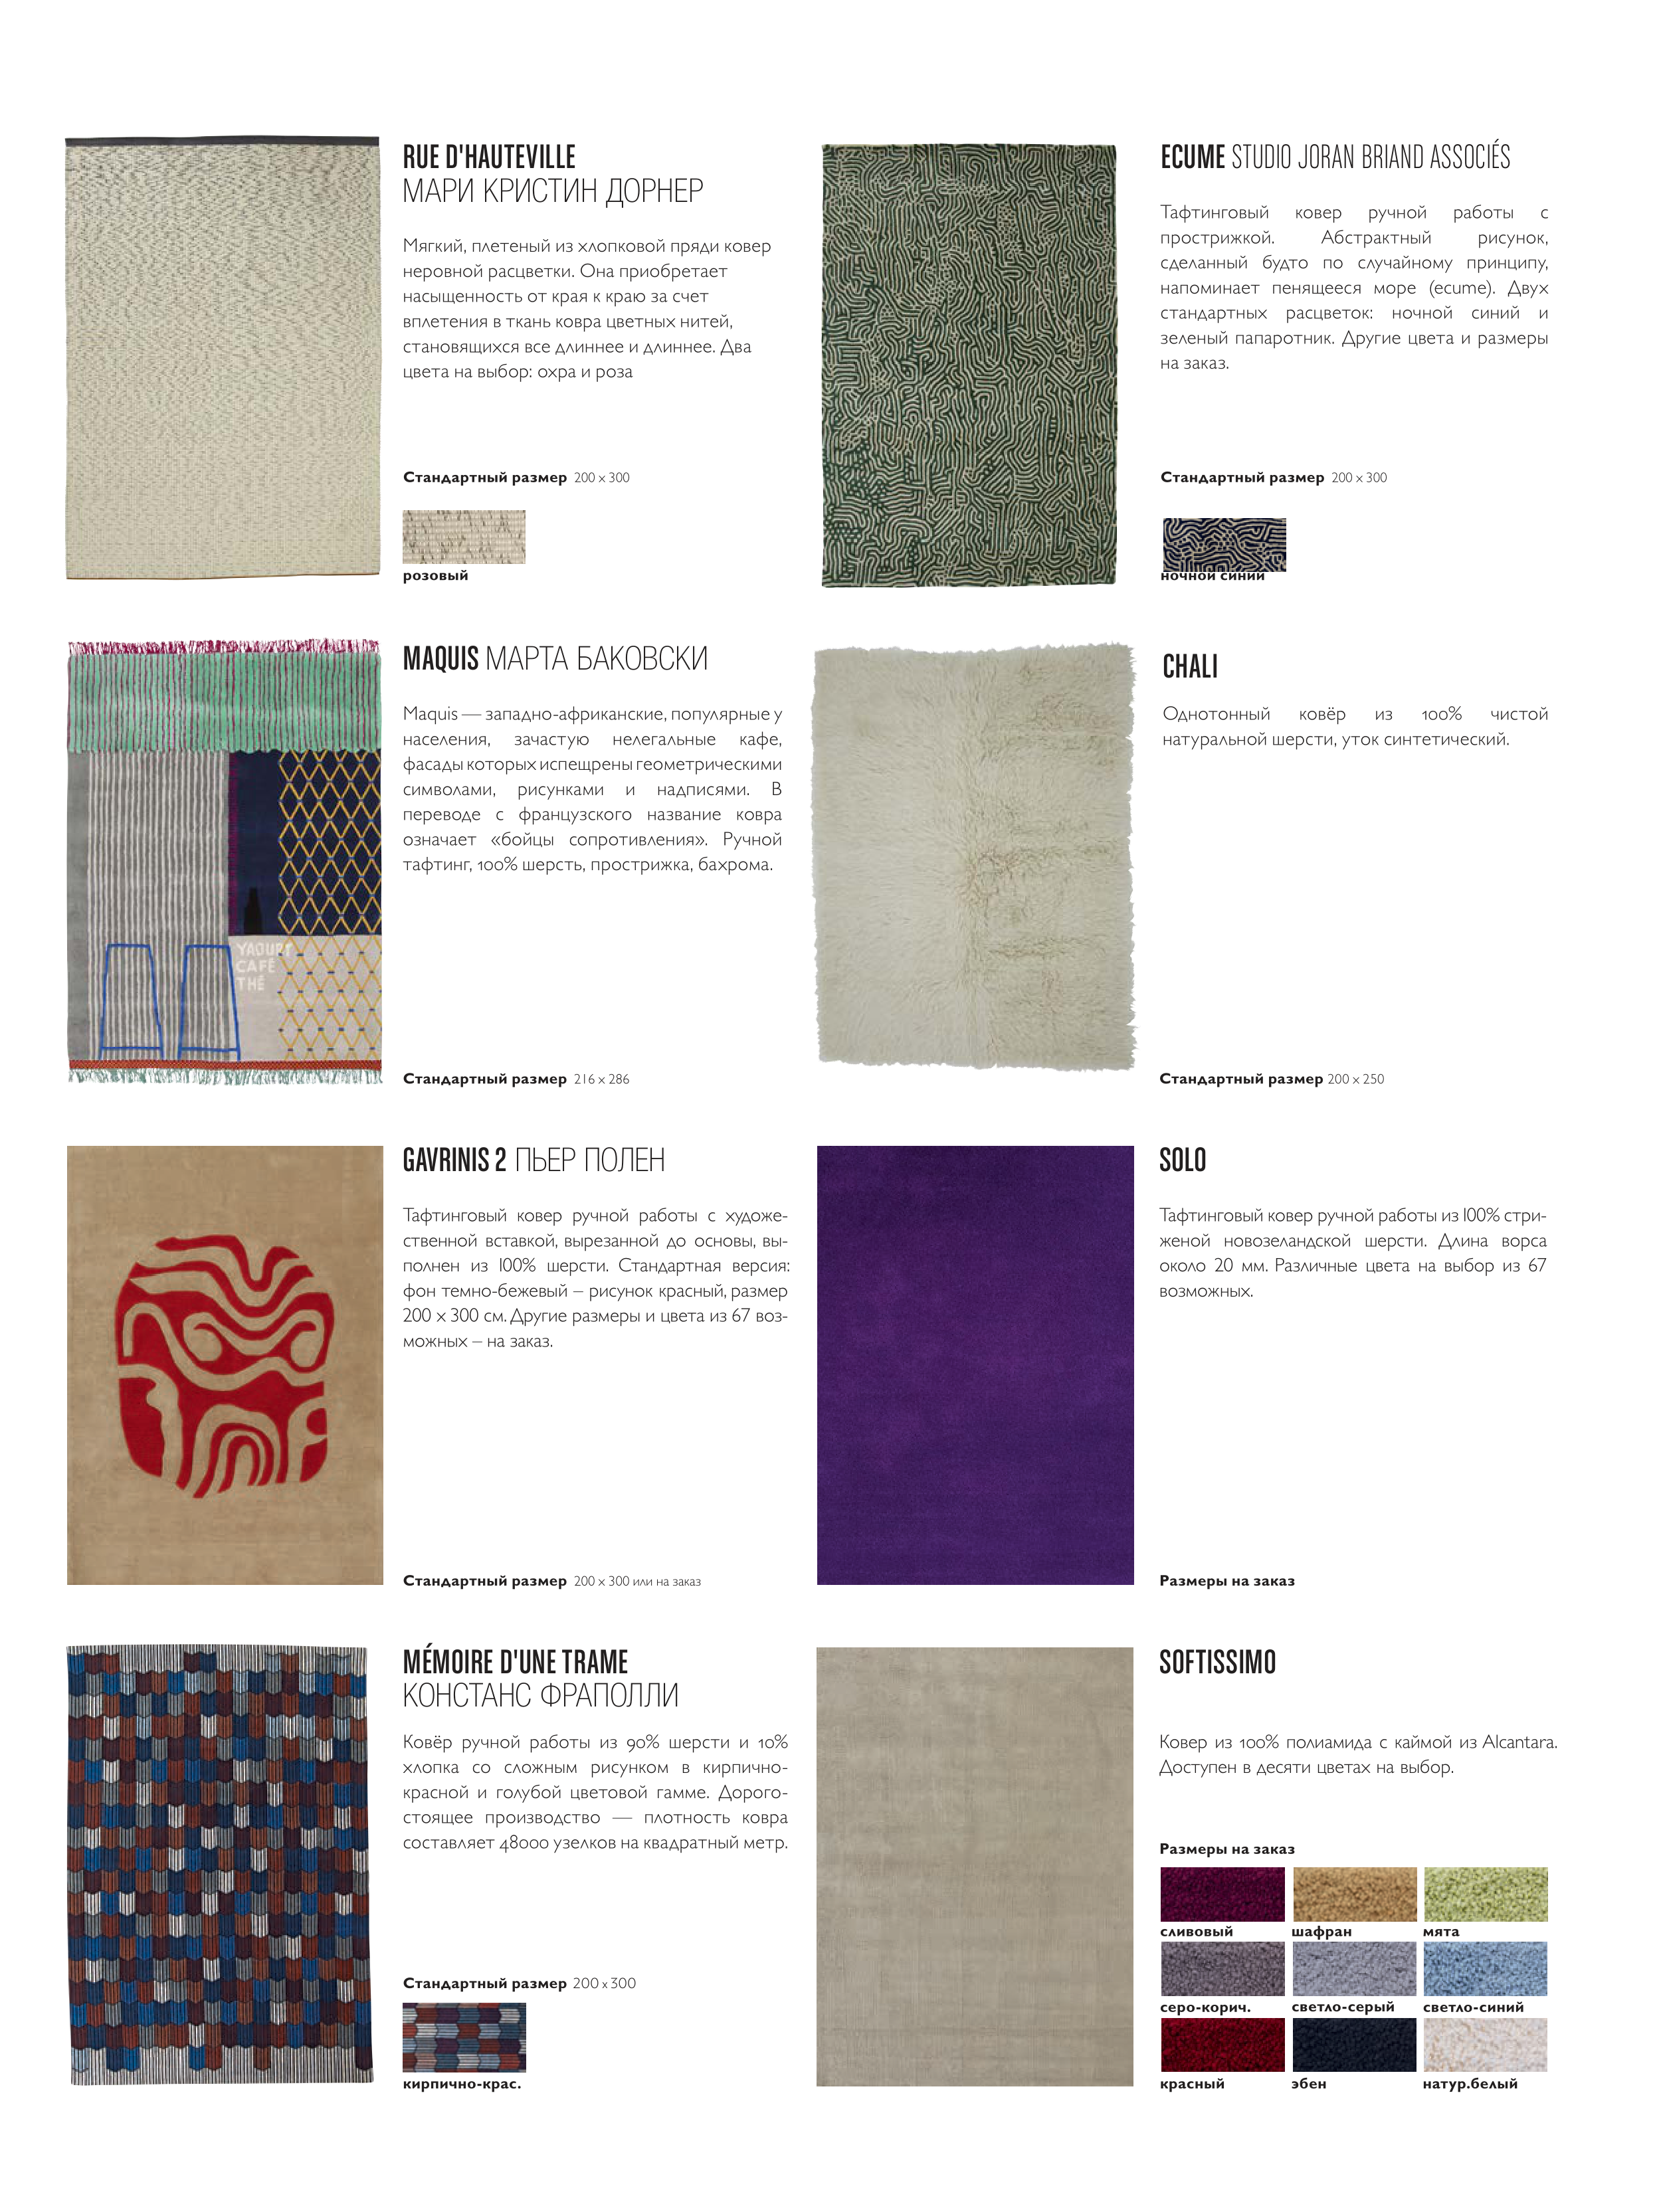 Основные различия между фабричным производством и ковром ручной работы